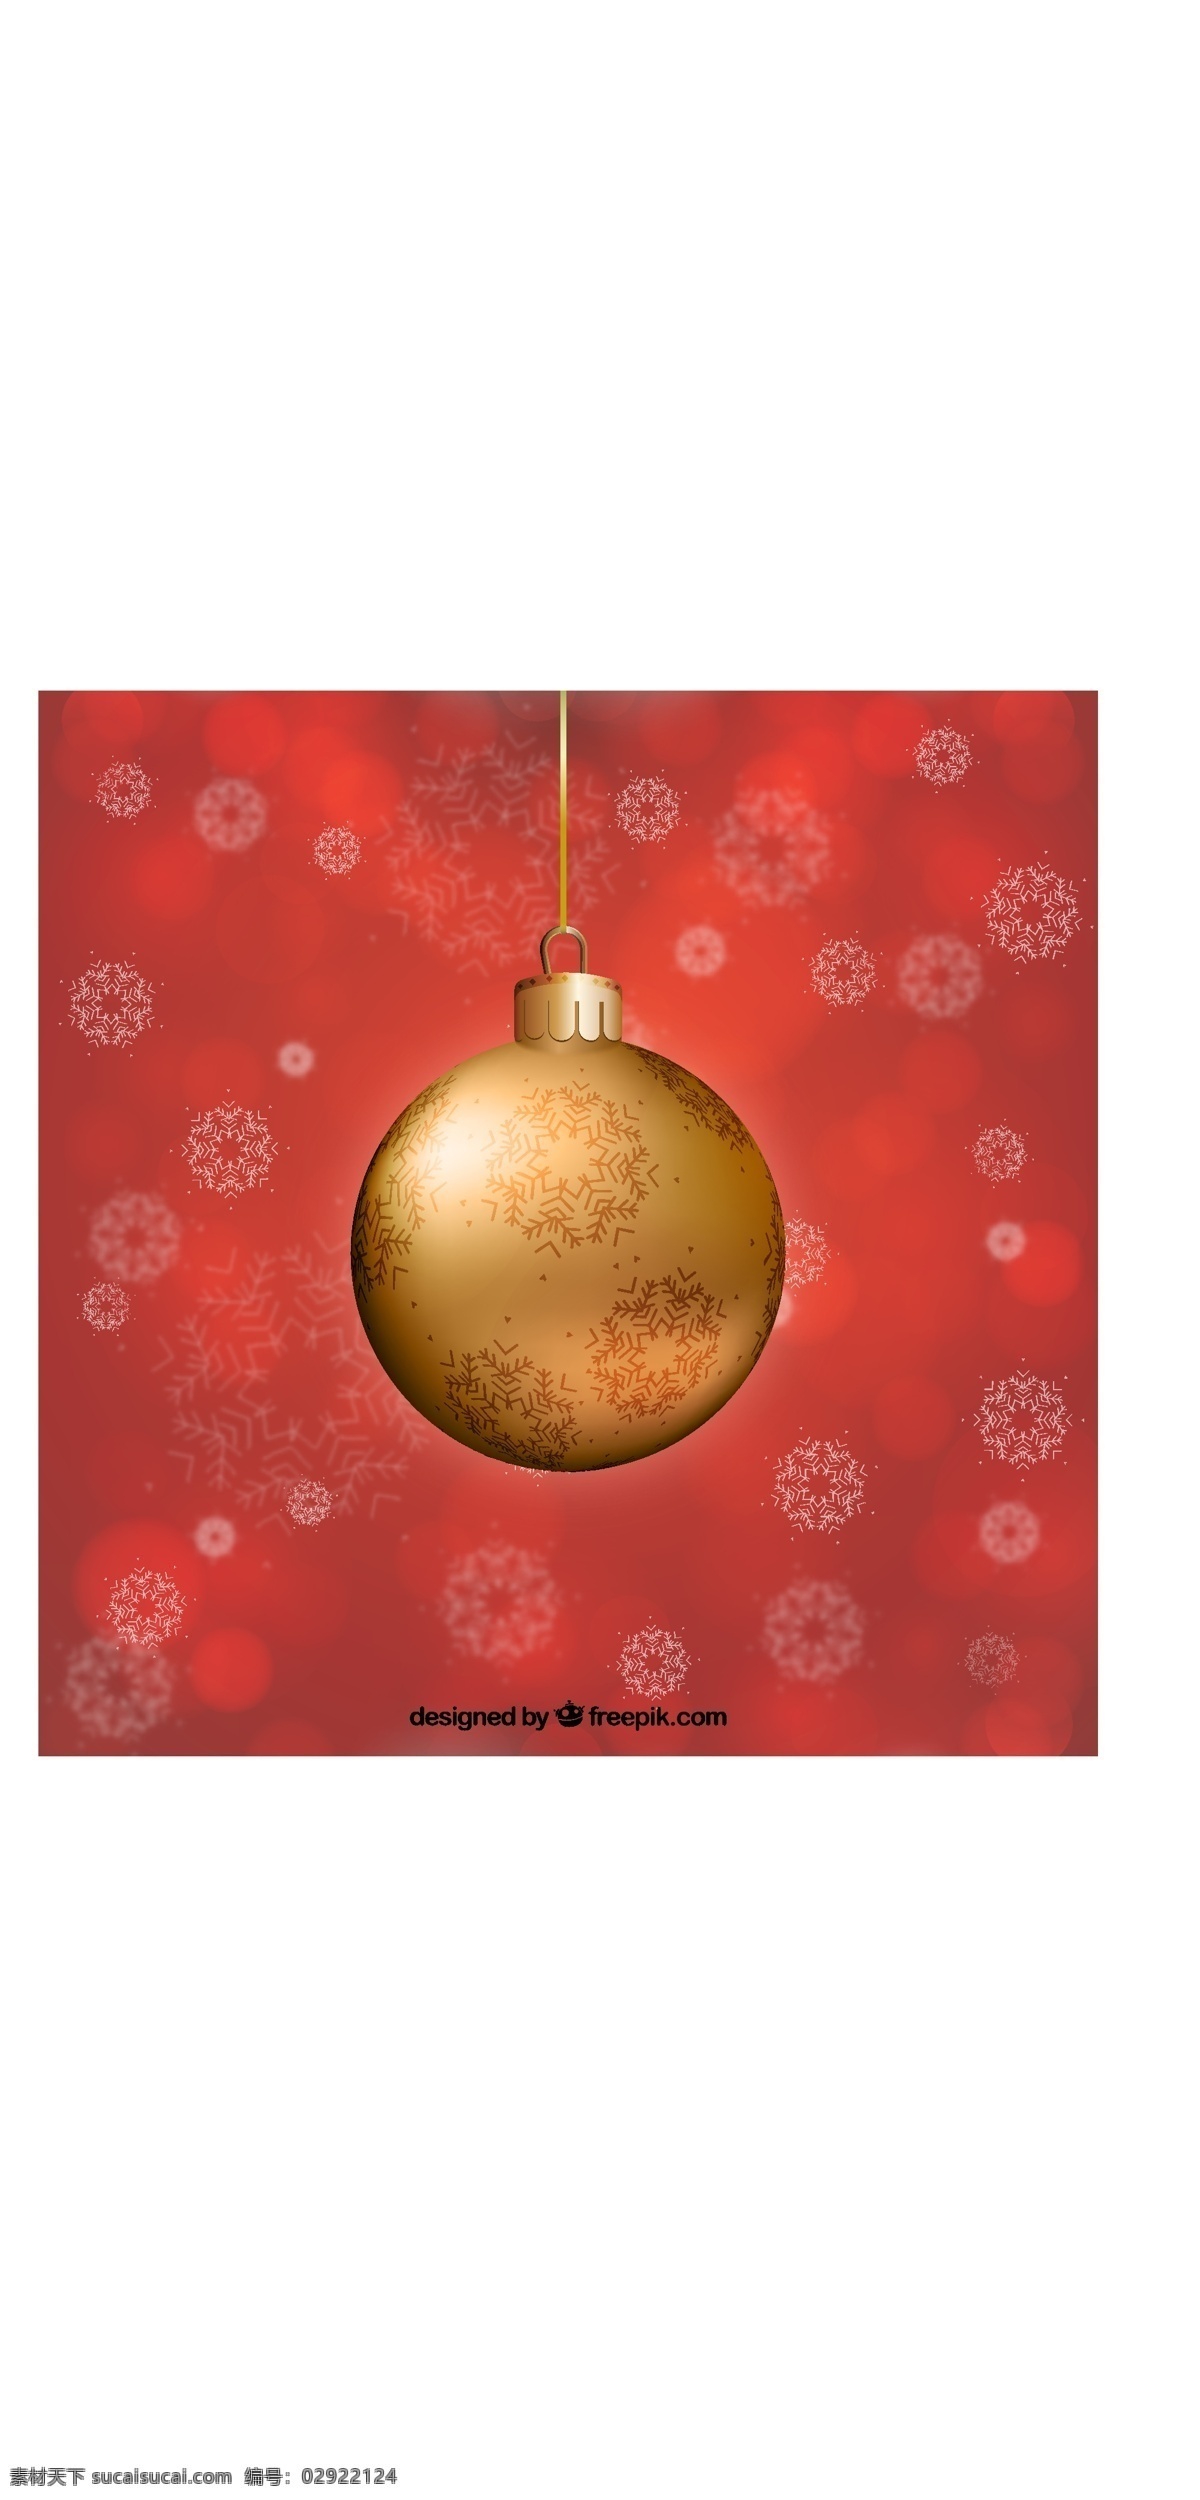 黄金 圣诞 玩具 红色 背景 圣诞树 金 新的一年 新年快乐 圣诞快乐 冬天快乐 圣诞红 圣诞节 红色背景 庆典 新的节日 装饰 球